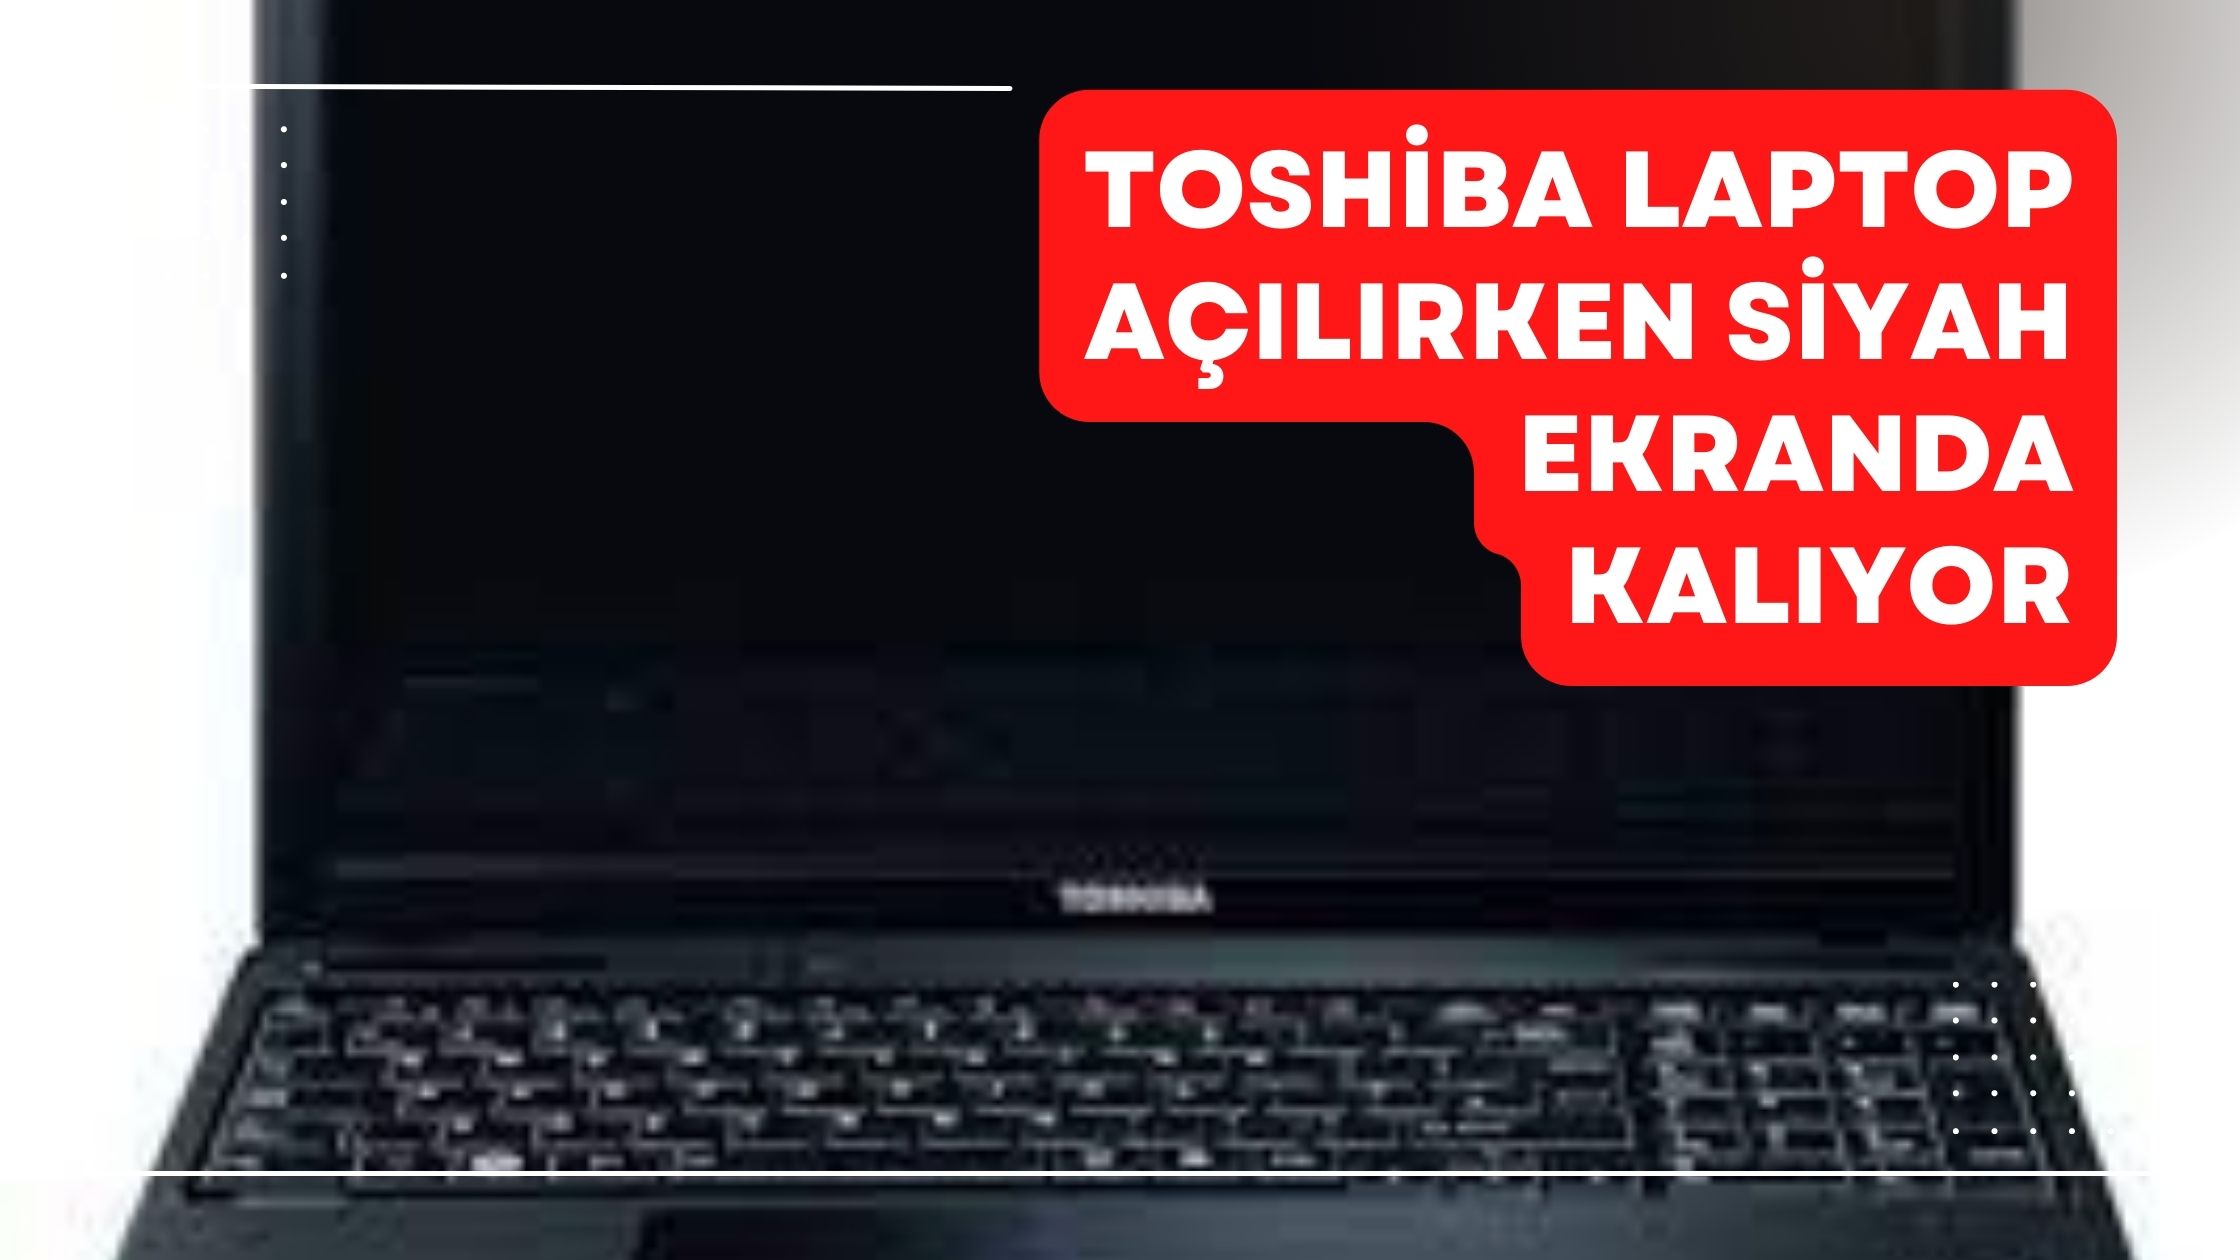 Toshiba Laptop Açılırken Siyah Ekranda Kalıyor